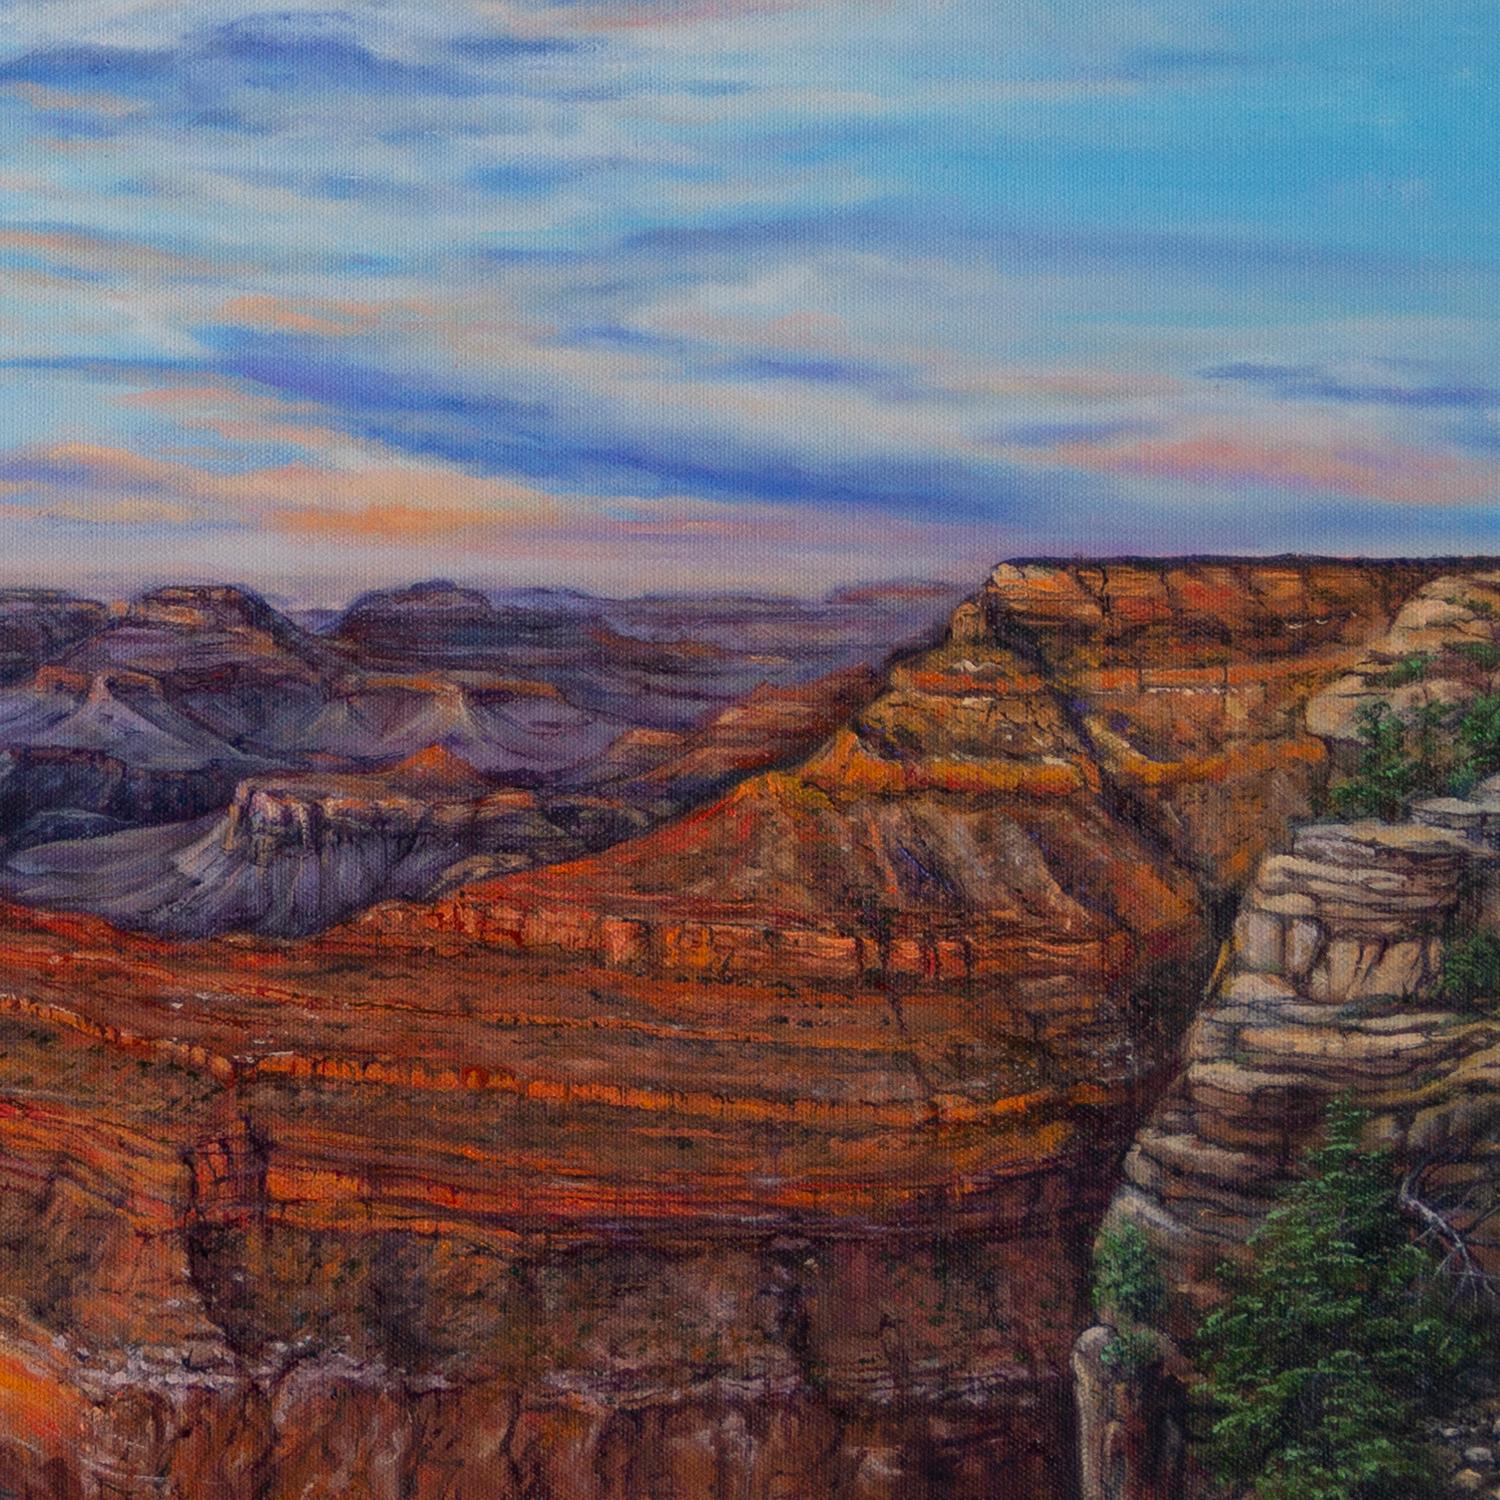 <p>Kommentare des Künstlers<br>Mit dem Anbruch der Morgendämmerung nimmt der Grand Canyon einen weiteren flüchtigen Moment seiner zeitlosen Existenz auf. Seine Schichten spiegeln die majestätische Erhabenheit dieses Naturwunders wider. Die